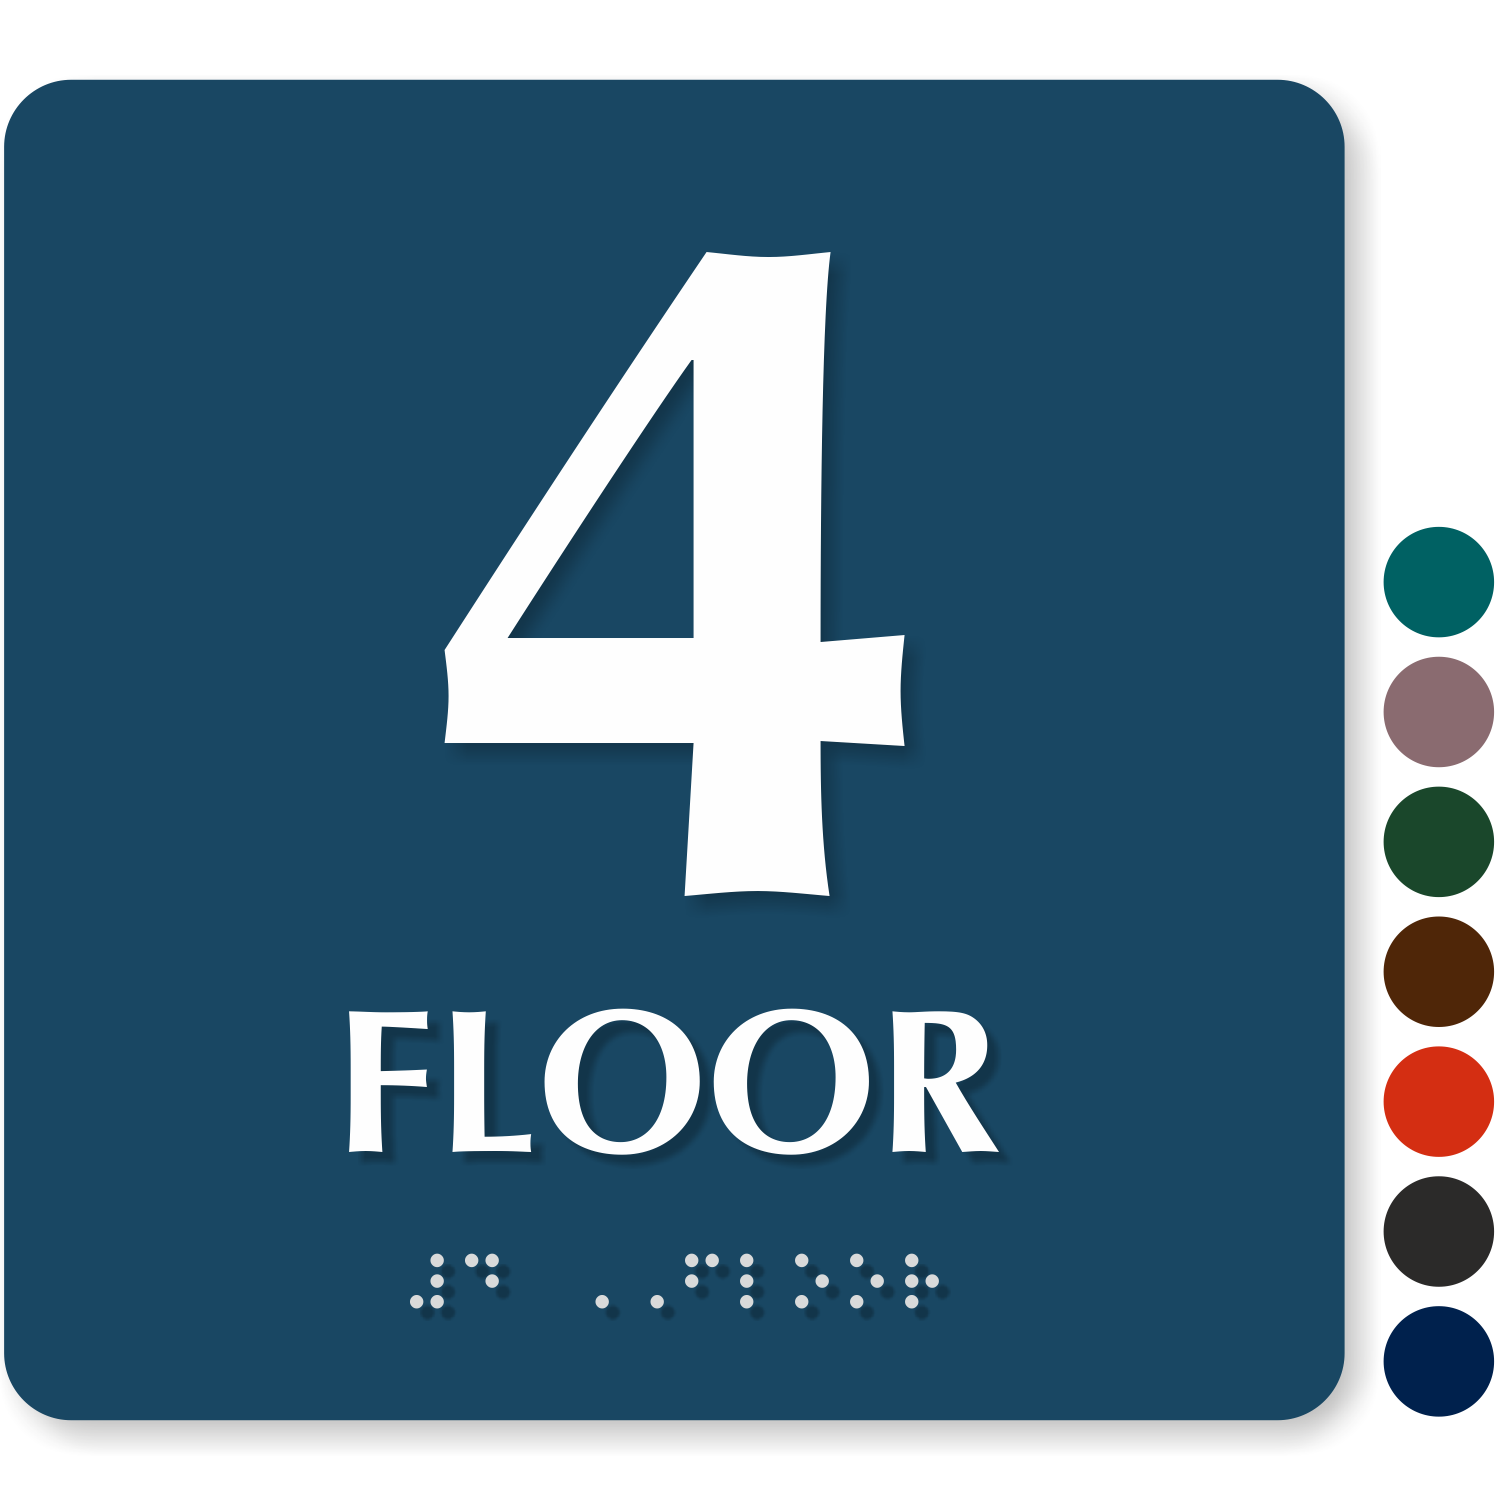 Number of floors. Знак номер этажа. 1 Этаж надпись. Этаж надпись. Стикеры этаж 1.